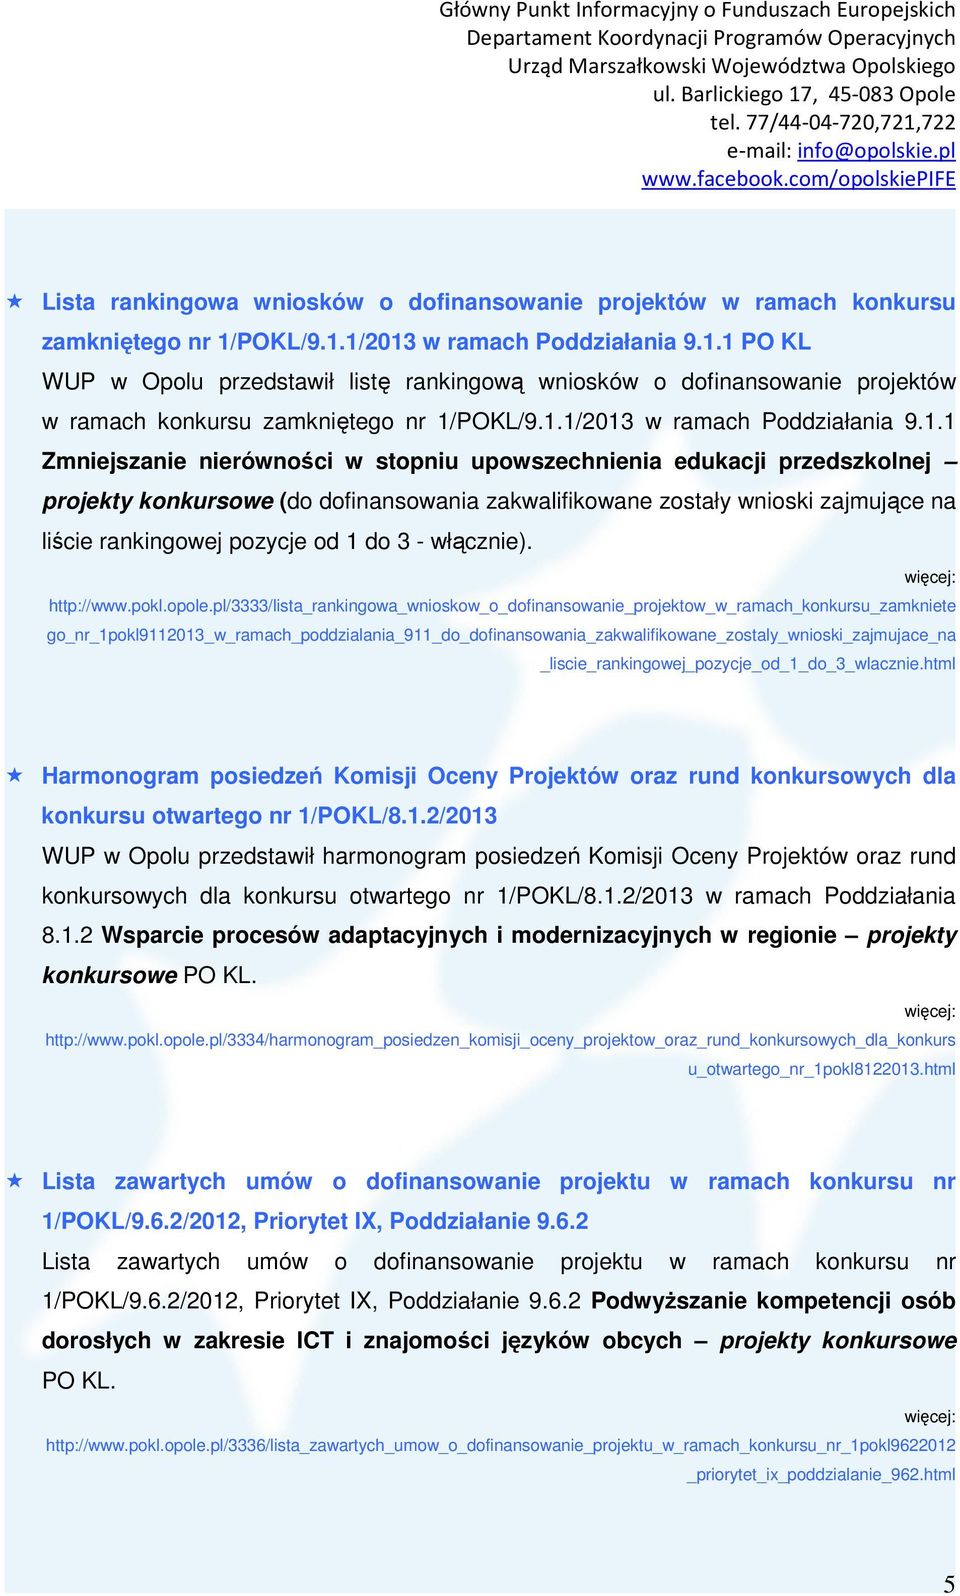 1/2013 w ramach Poddziałania 9.1.1 PO KL WUP w Opolu przedstawił listę rankingową wniosków o dofinansowanie projektów w ramach konkursu zamkniętego nr 1/1/2013 w ramach Poddziałania 9.1.1